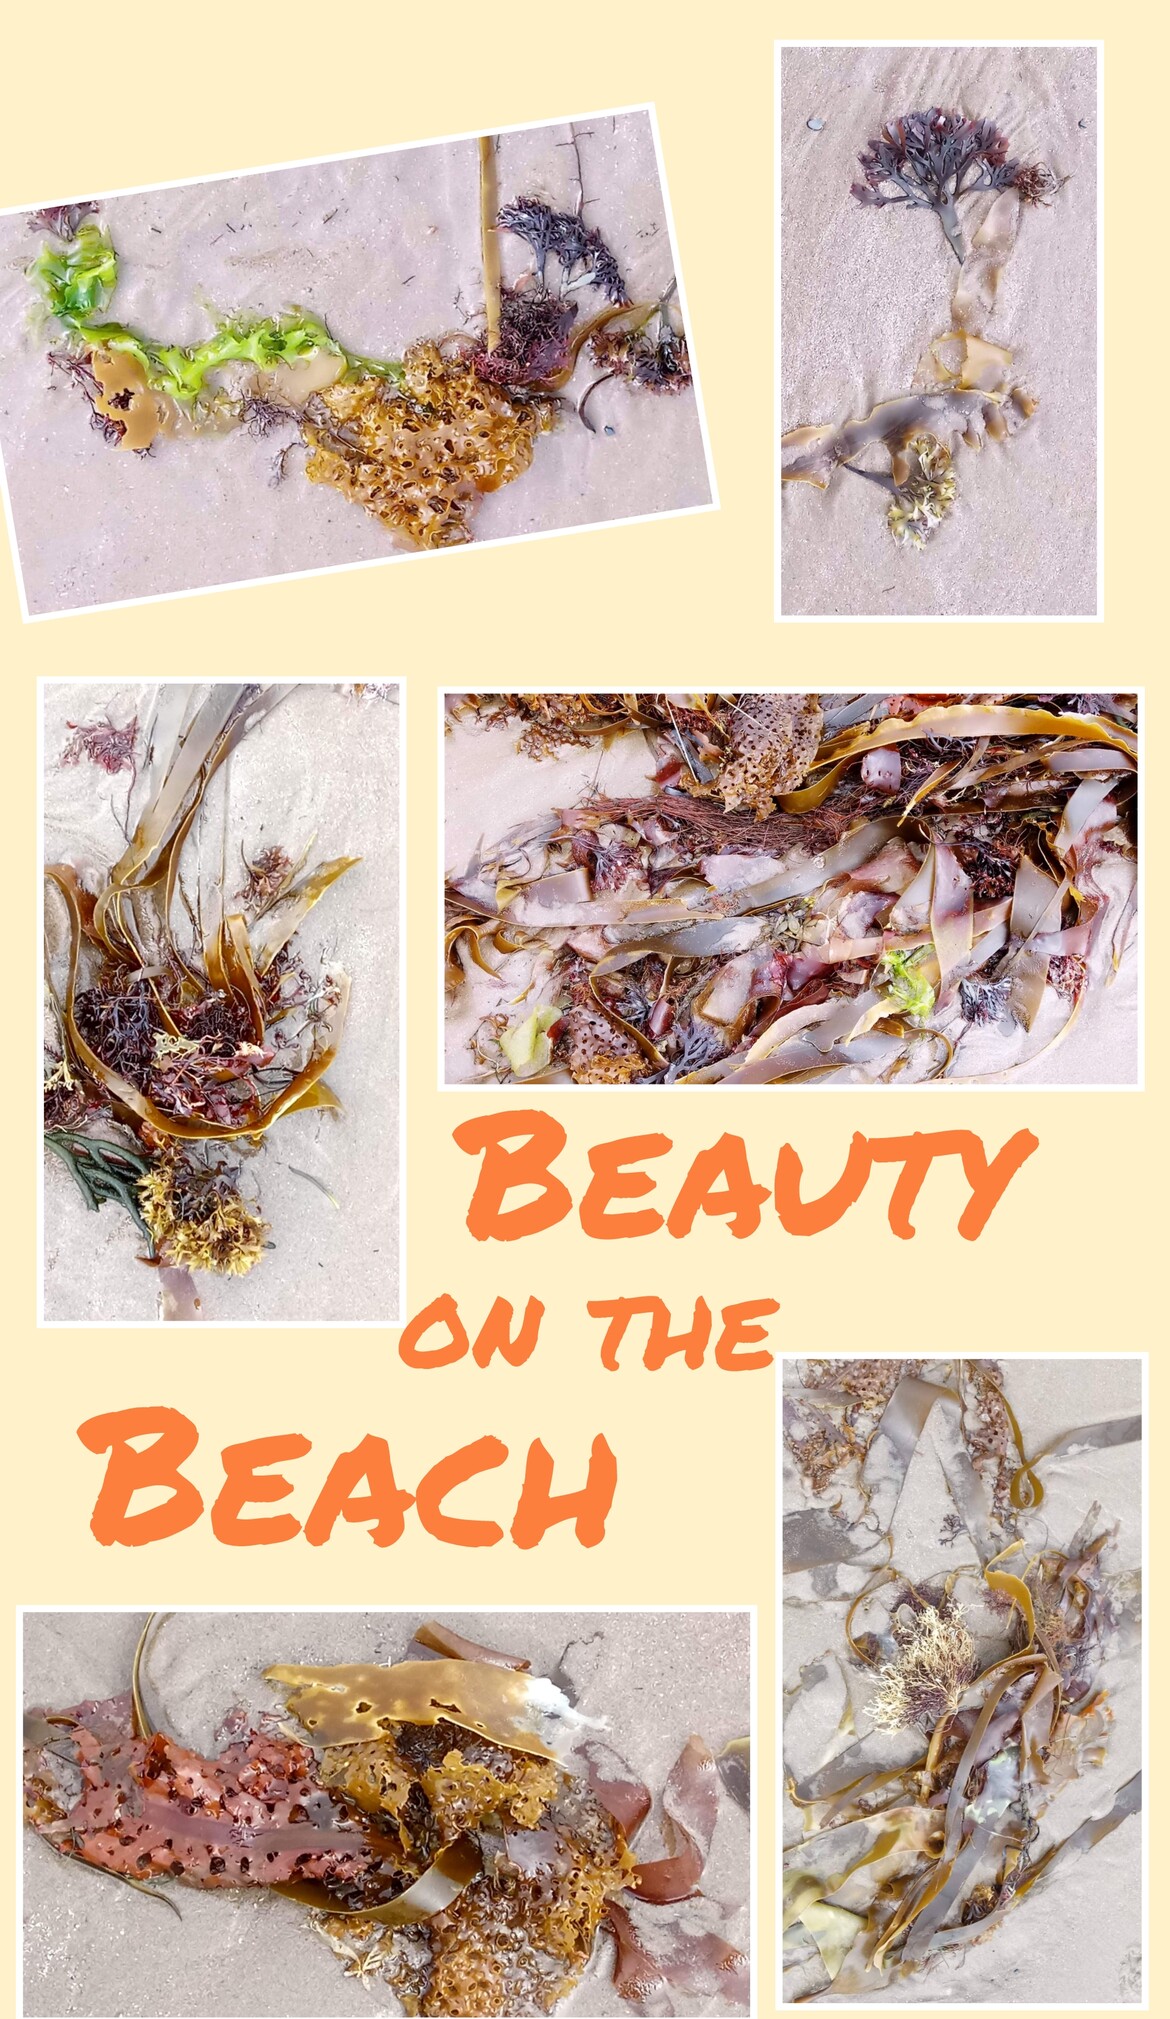 Beauty on the Beach